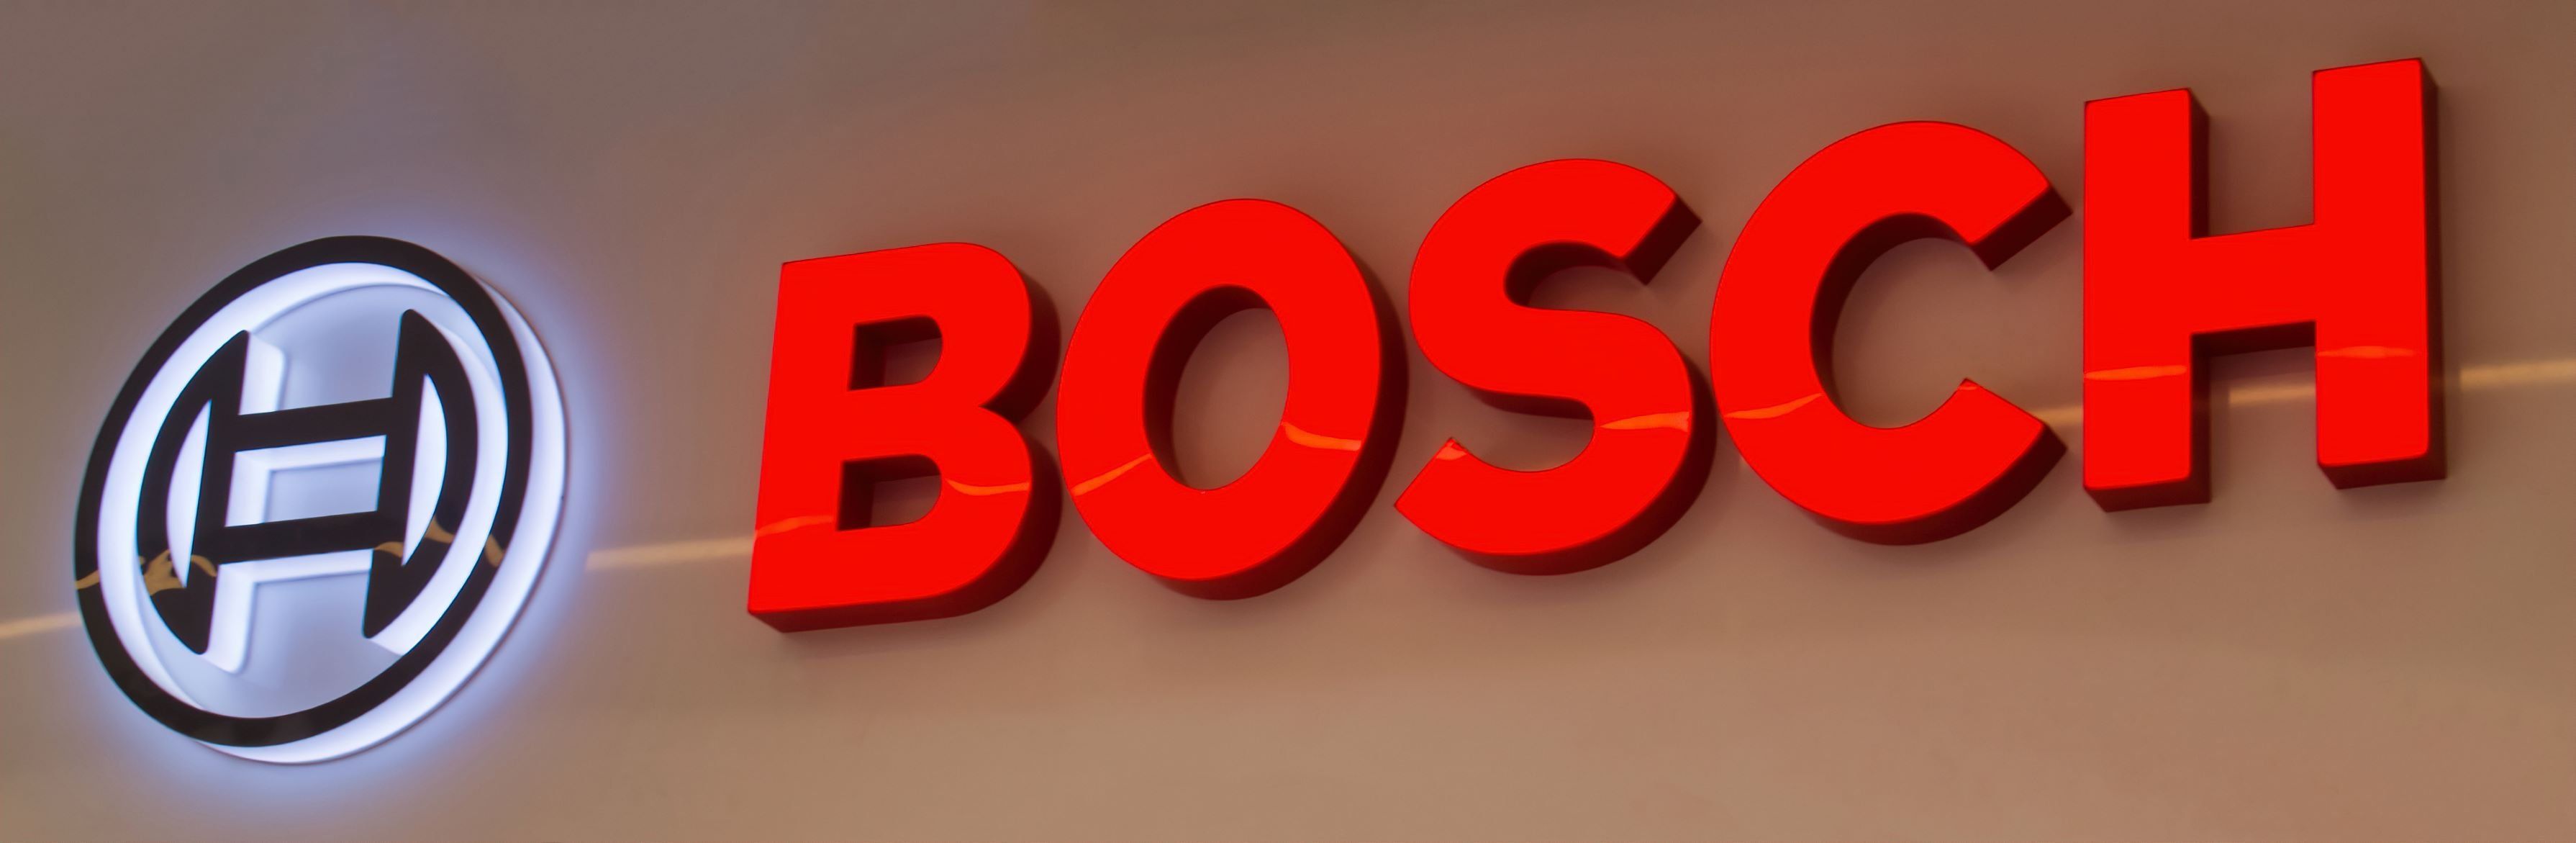 70 milliárd forintos magyarországi fejlesztést jelentett be a Bosch